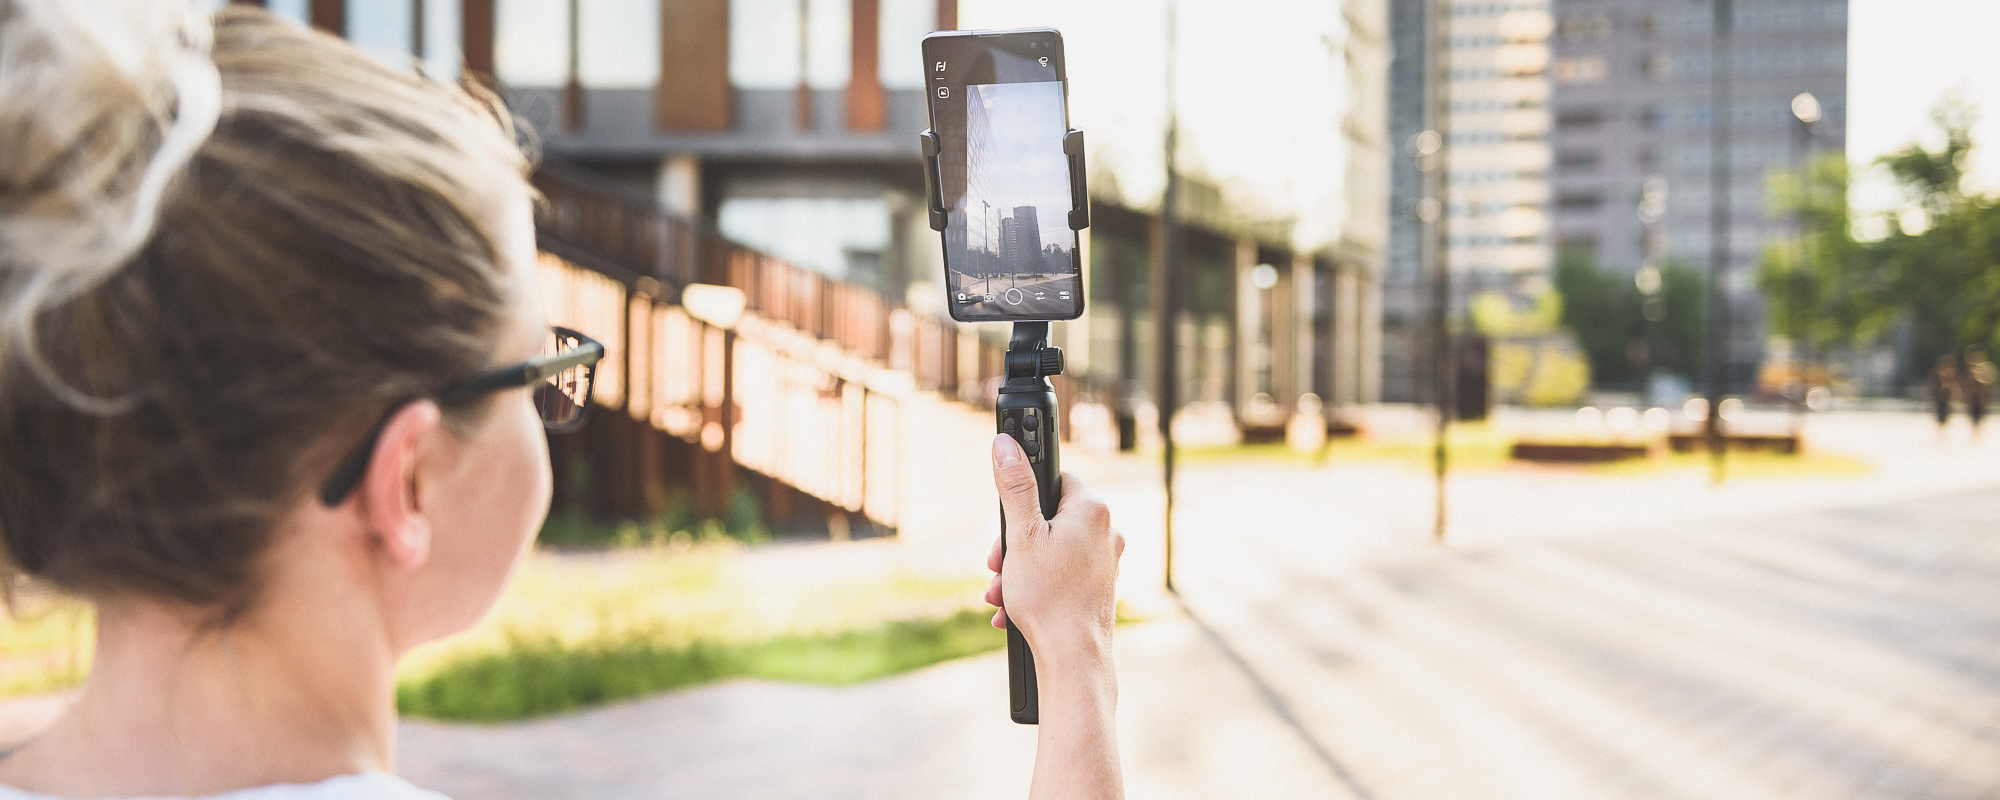 Dziewczyna nagrywa smartfonem umieszczonym na gimbalu widoki pokazujace urok miasta